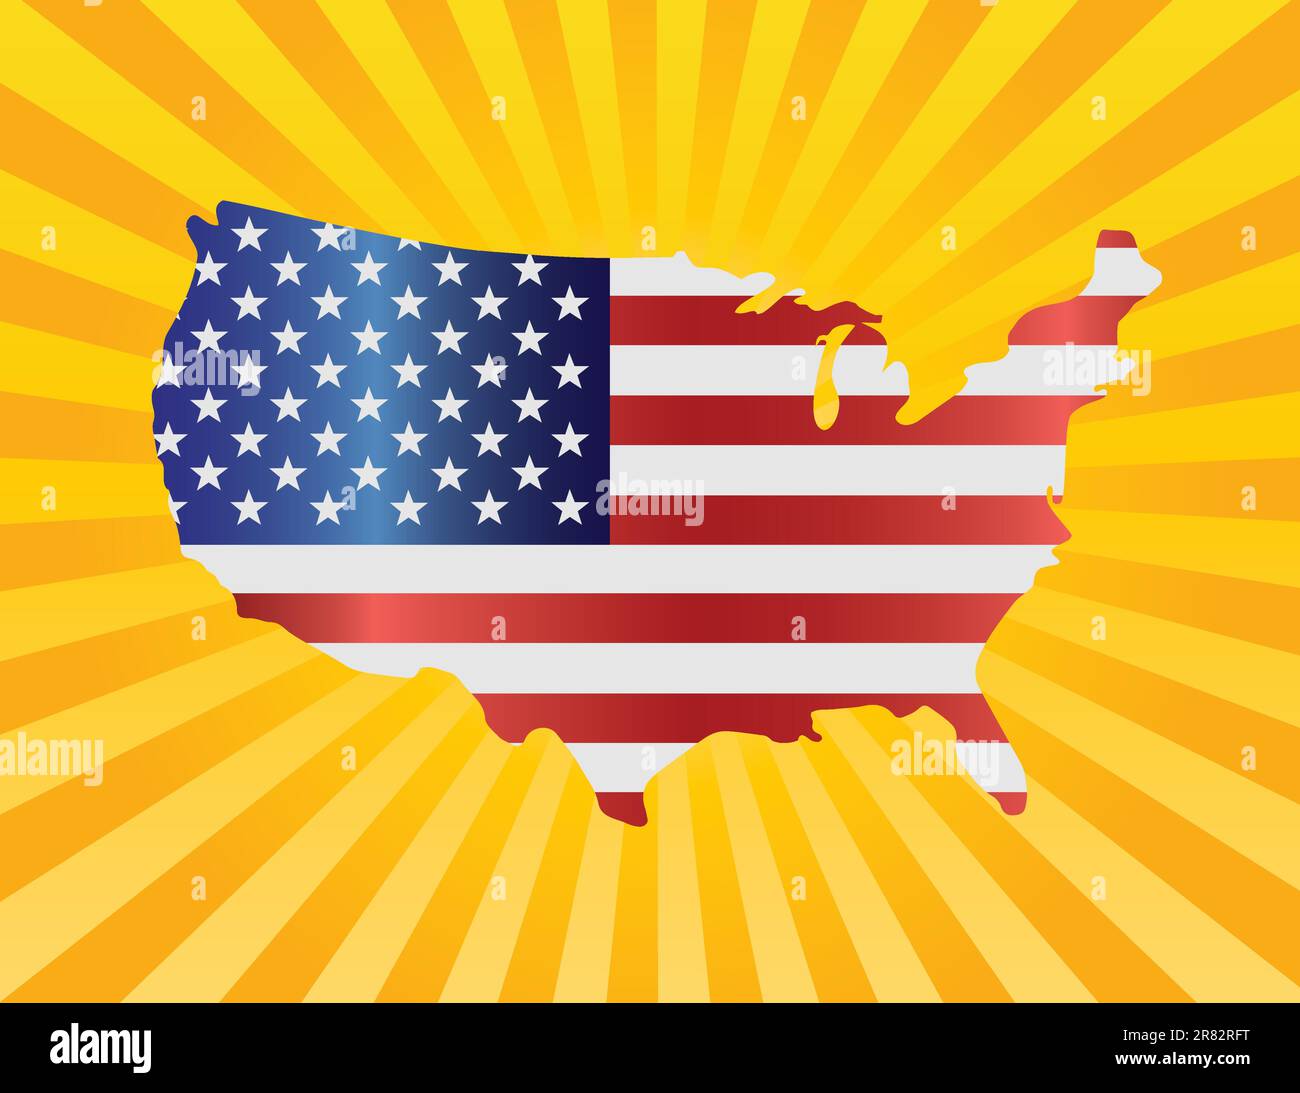 USA-Flagge in der Karte Silhouette mit Sonnenstrahlen Hintergrund Illustration Stock Vektor